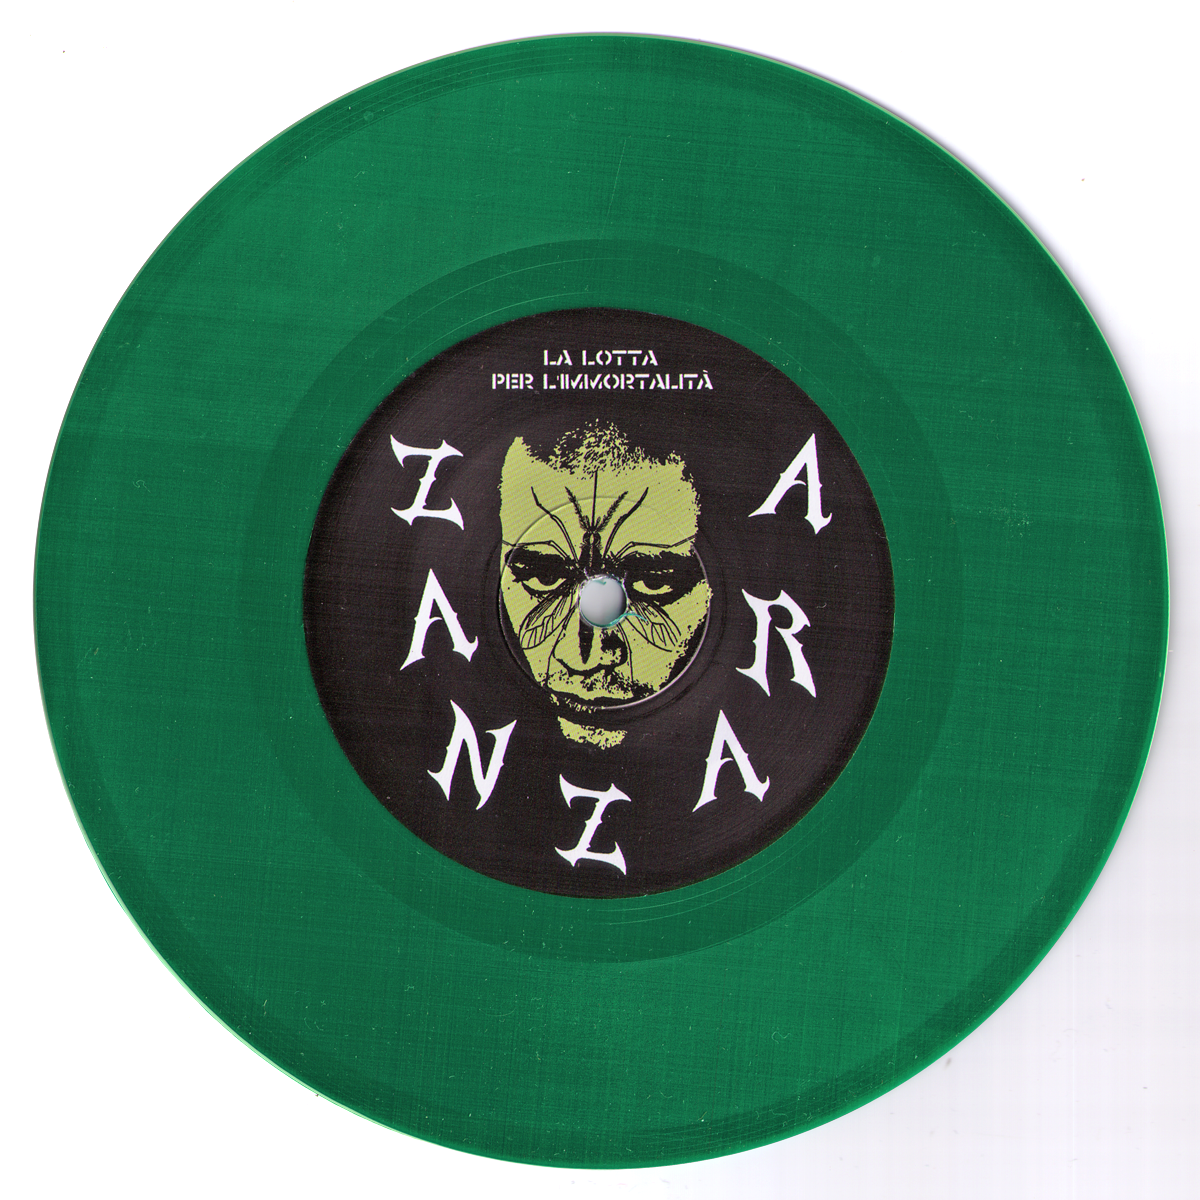 Zanzara- La Lotta Per L'Immortalità 7" ~RARE GREEN WAX / EX GAGGERS!